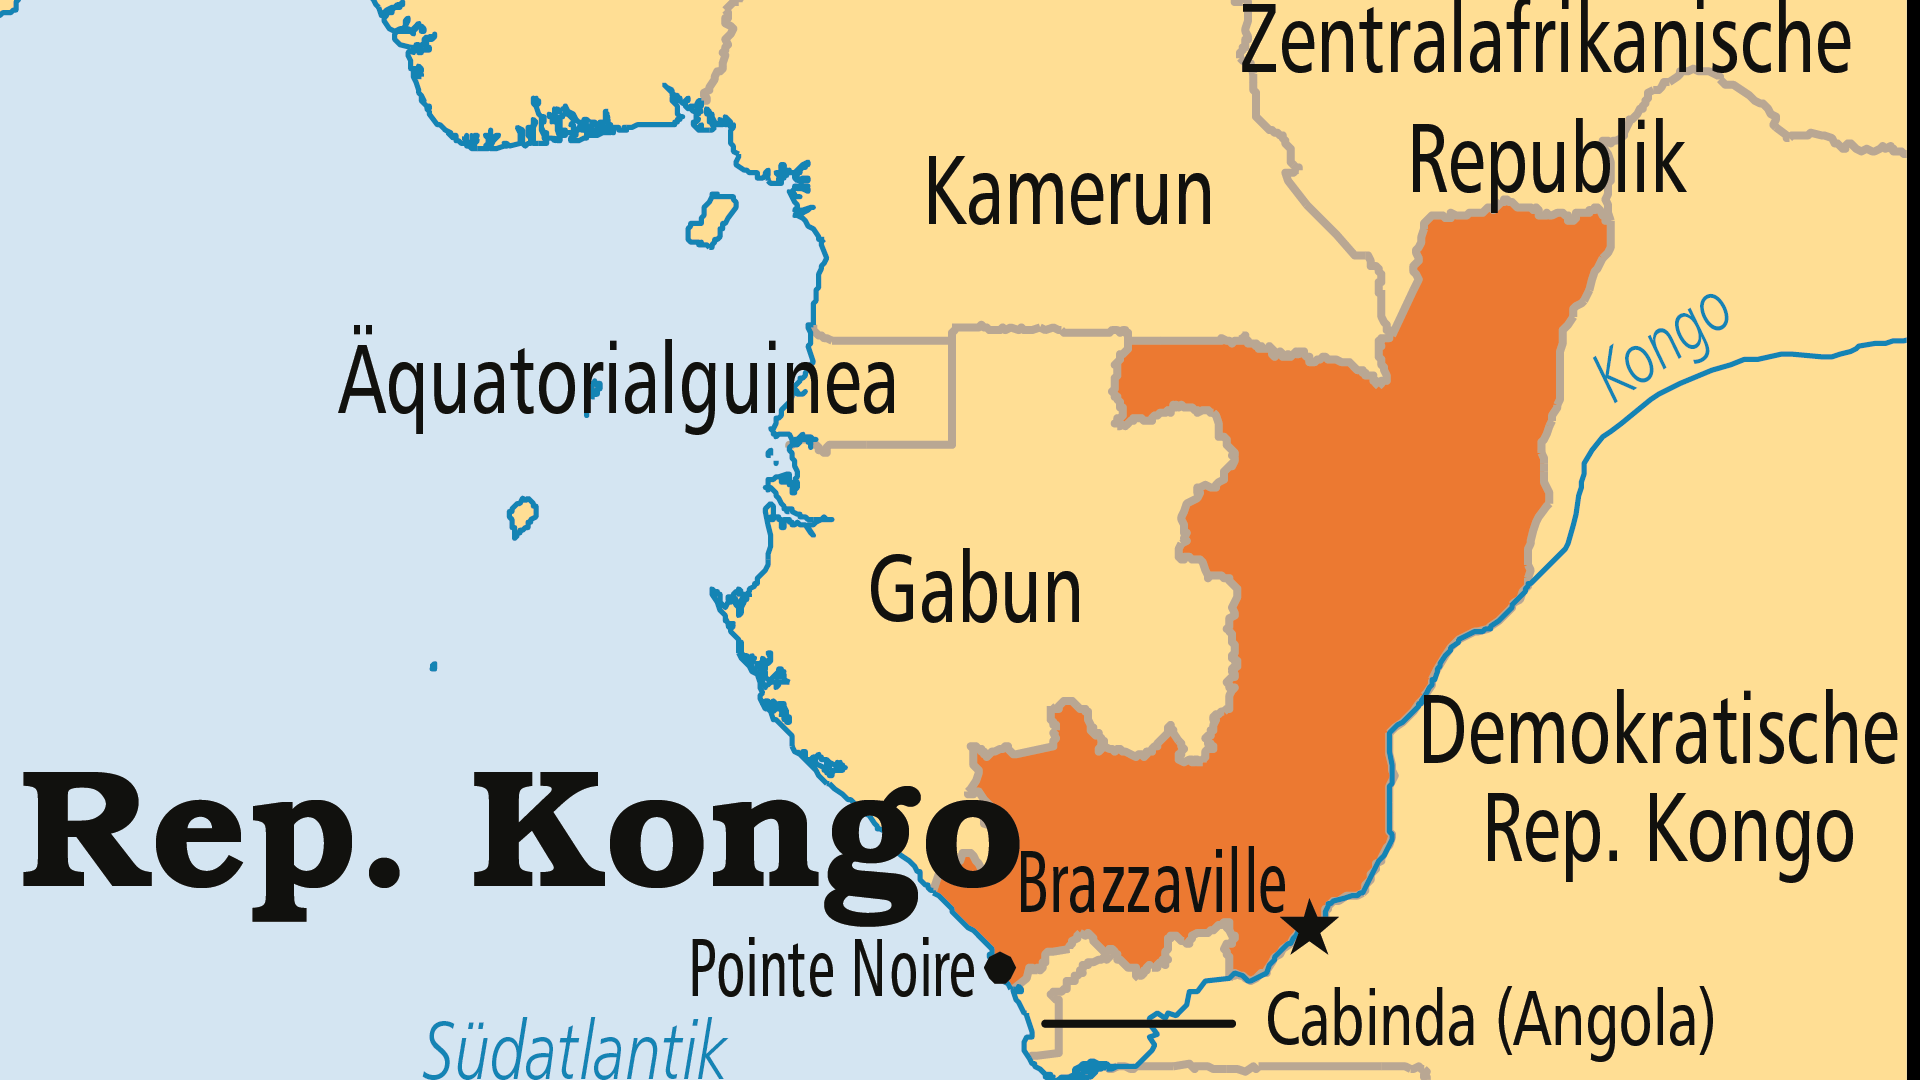 Operation World: Gebet für Kongo & Republik